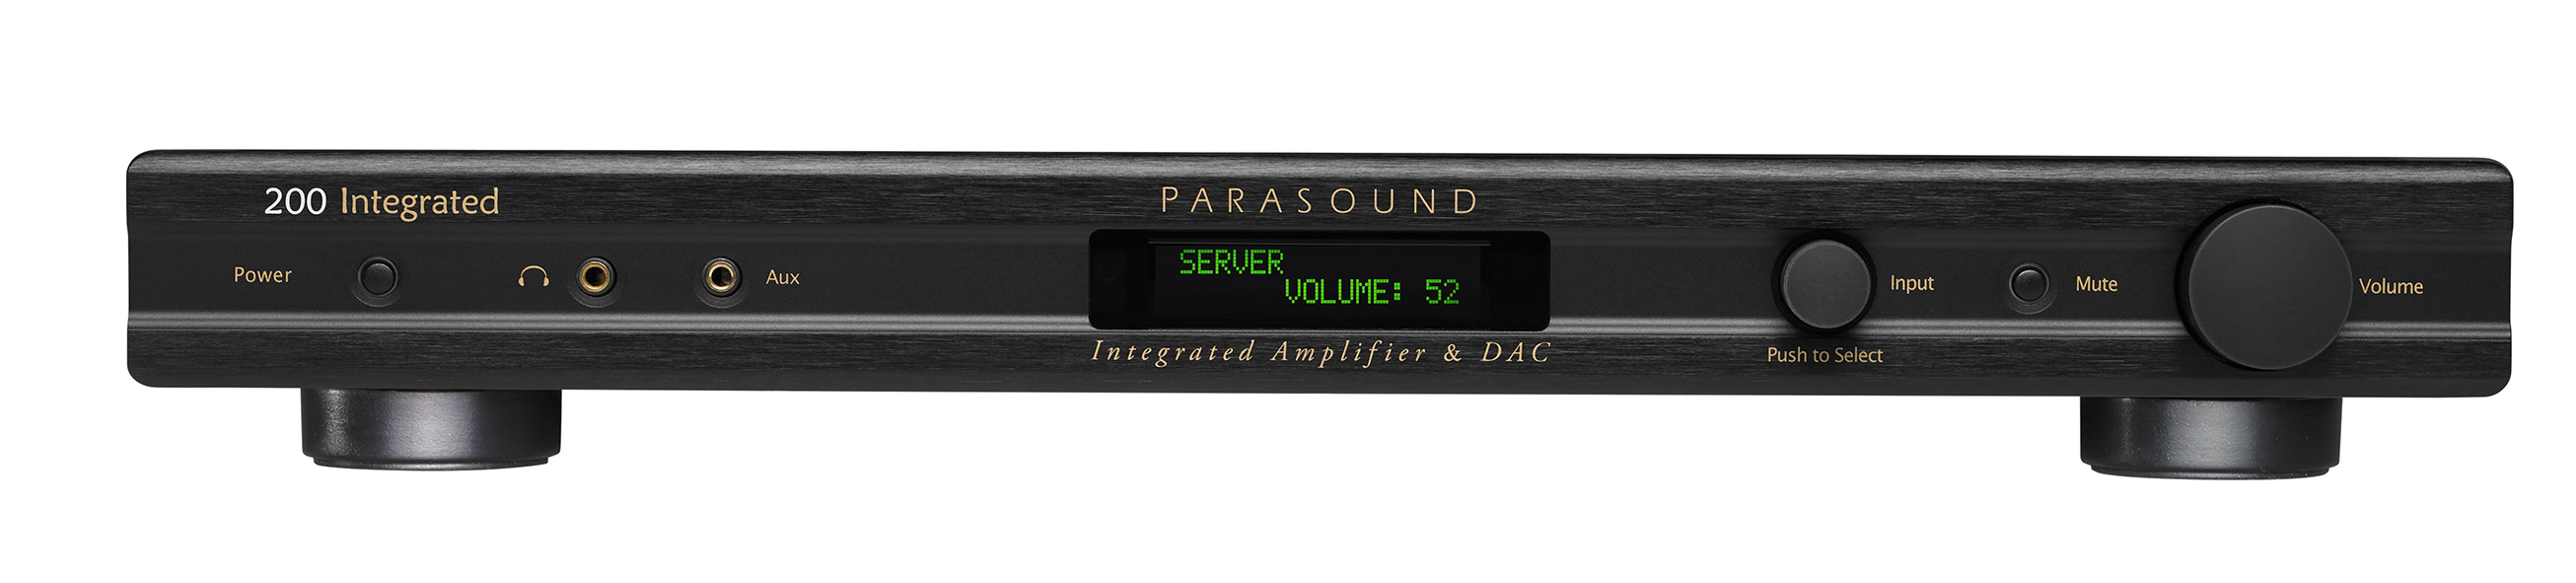 Интегральные стереоусилители Parasound 200 Integrated интегральные стереоусилители exposure 2510 integrated silver